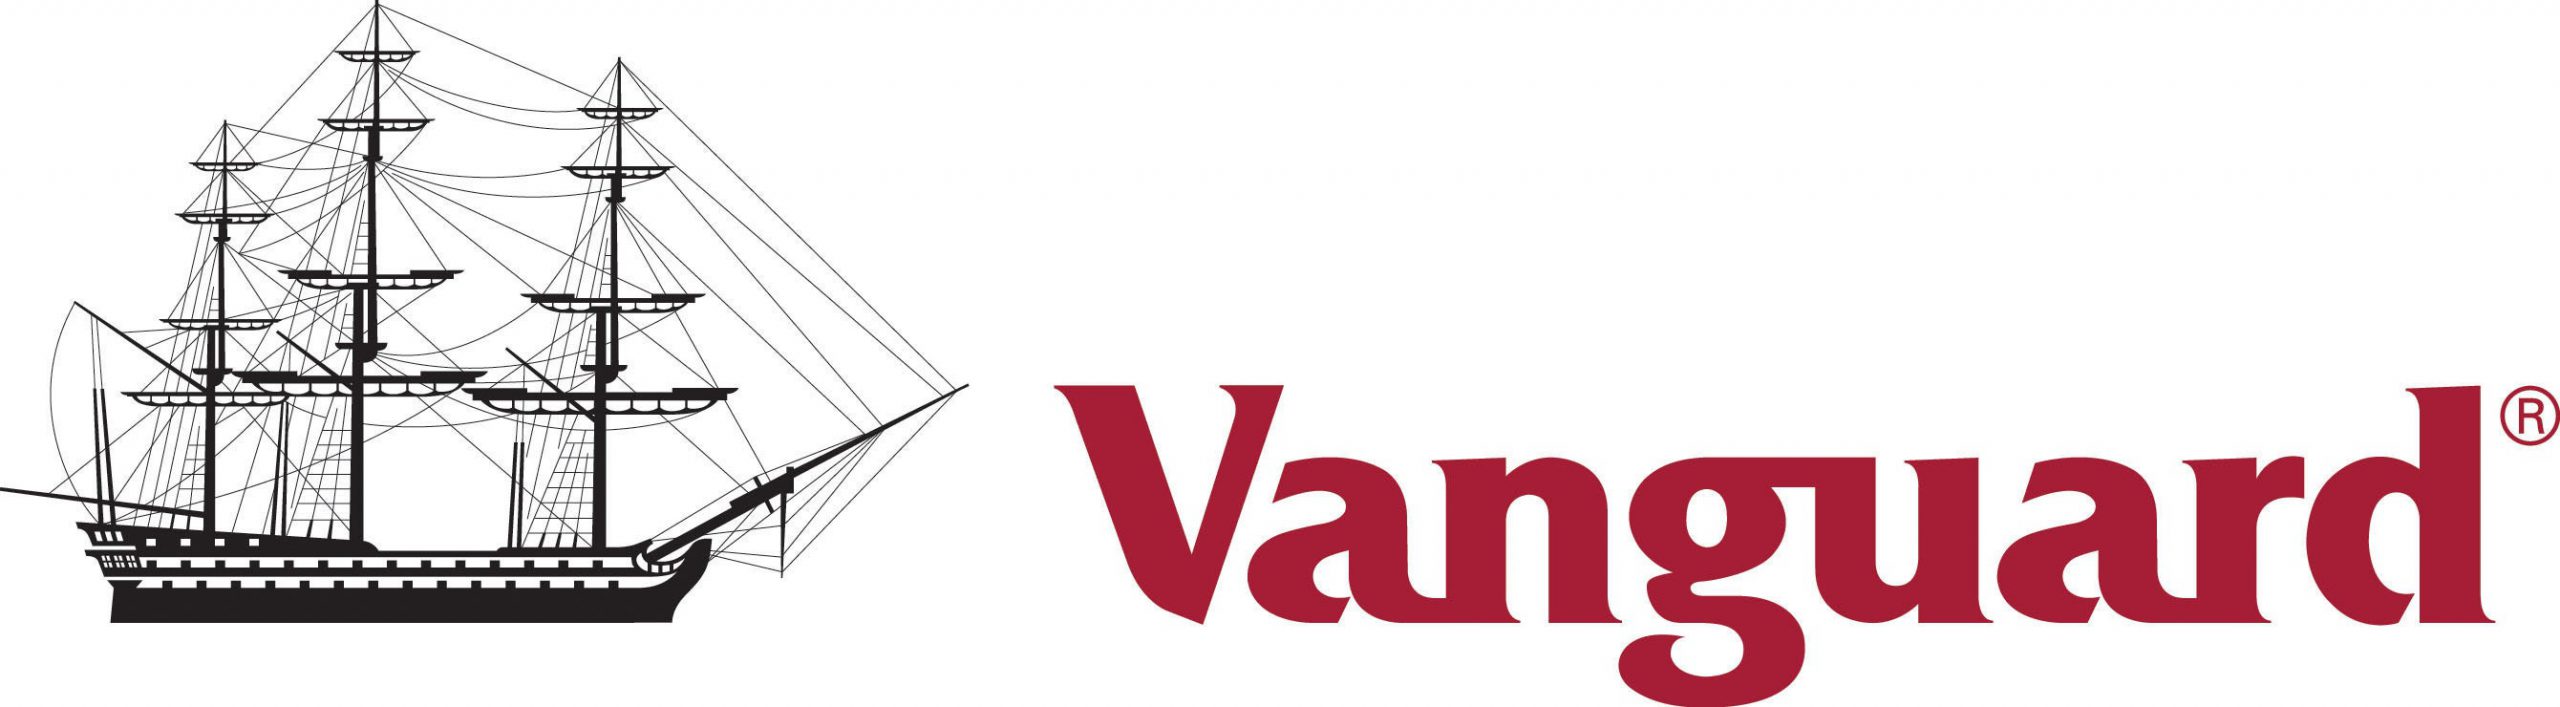 vanguard-logo-big